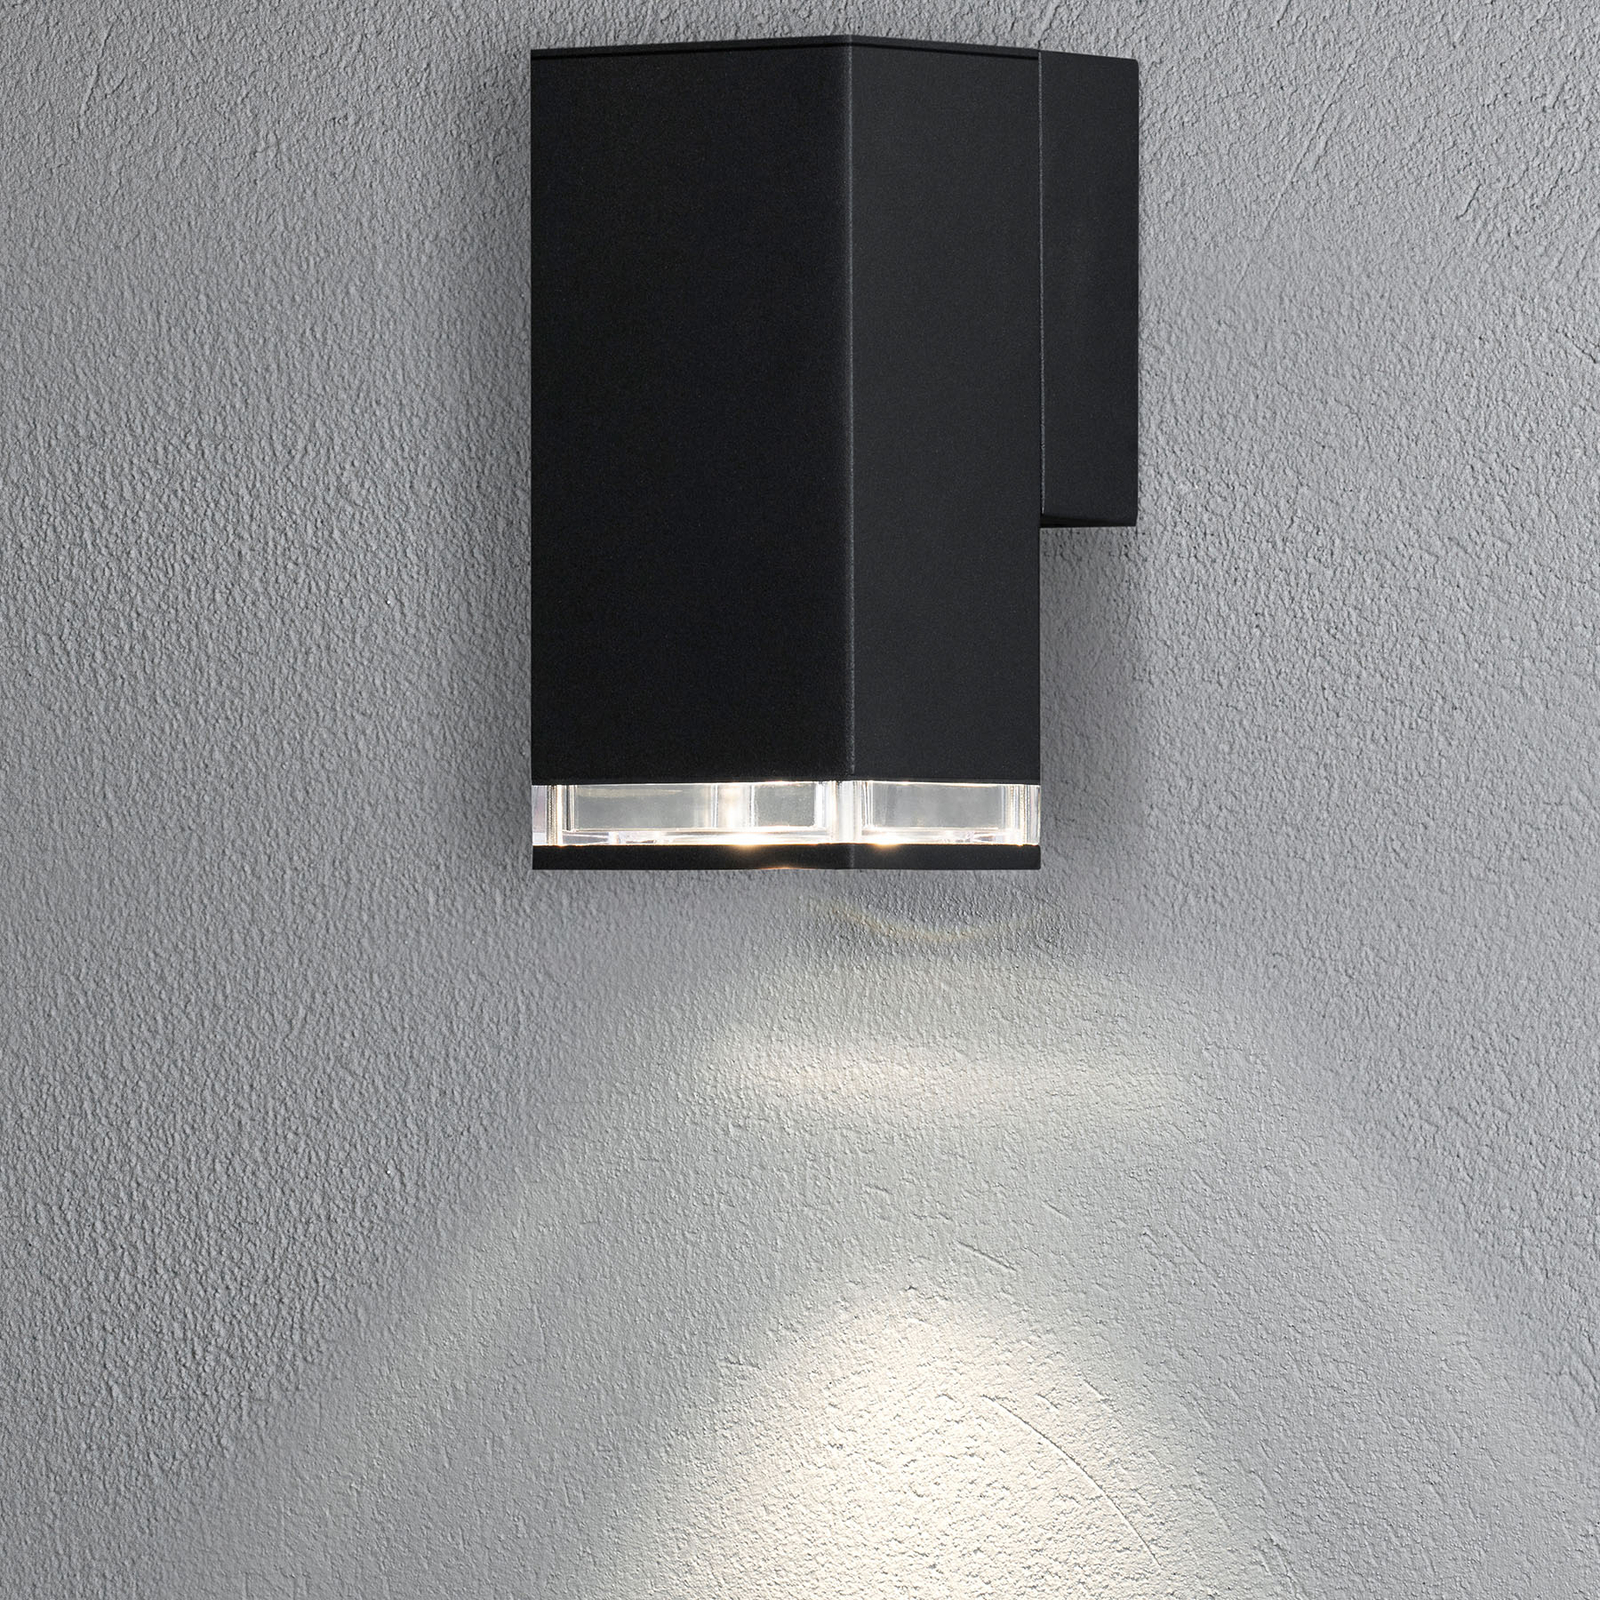 Pollux Downlight outdoor wall light 16.5 cm, black